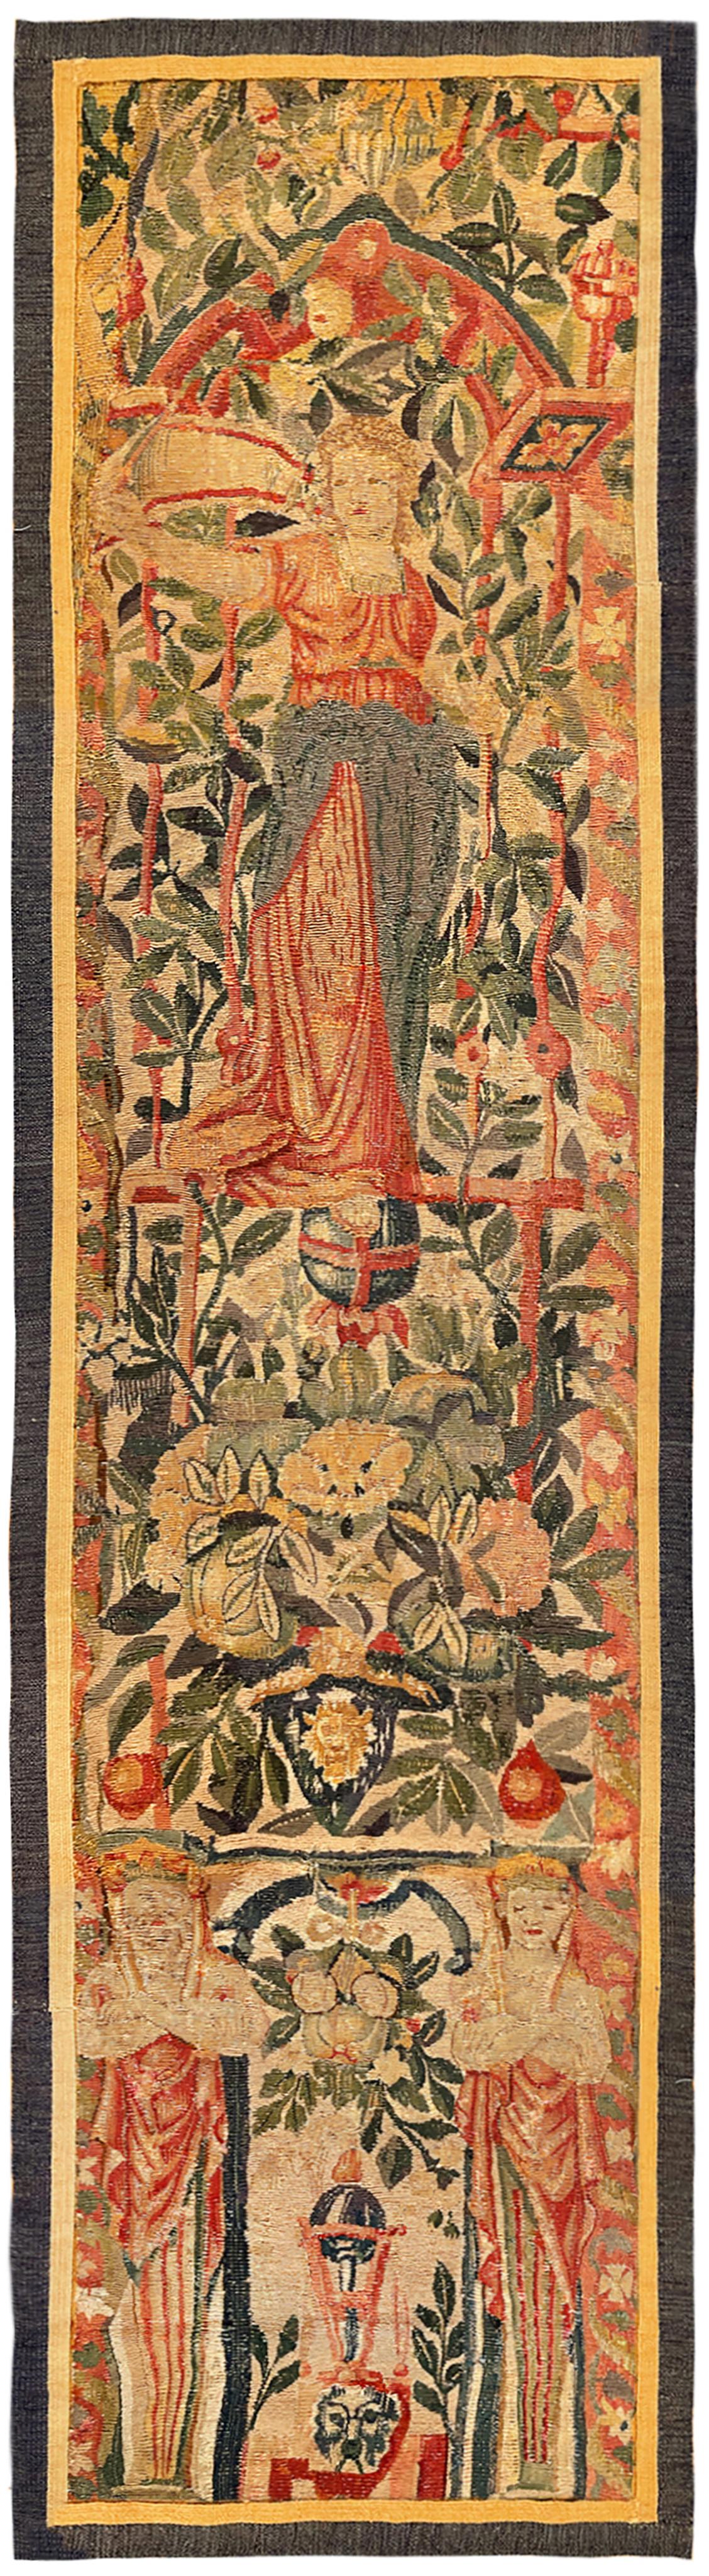 Paire de panneaux de tapisserie mythologique flamande de la fin du XVIe siècle. Ces panneaux de tapisserie décoratifs orientés verticalement représentent des figures féminines mythologiques en haut, debout dans des réserves florales élaborées, avec